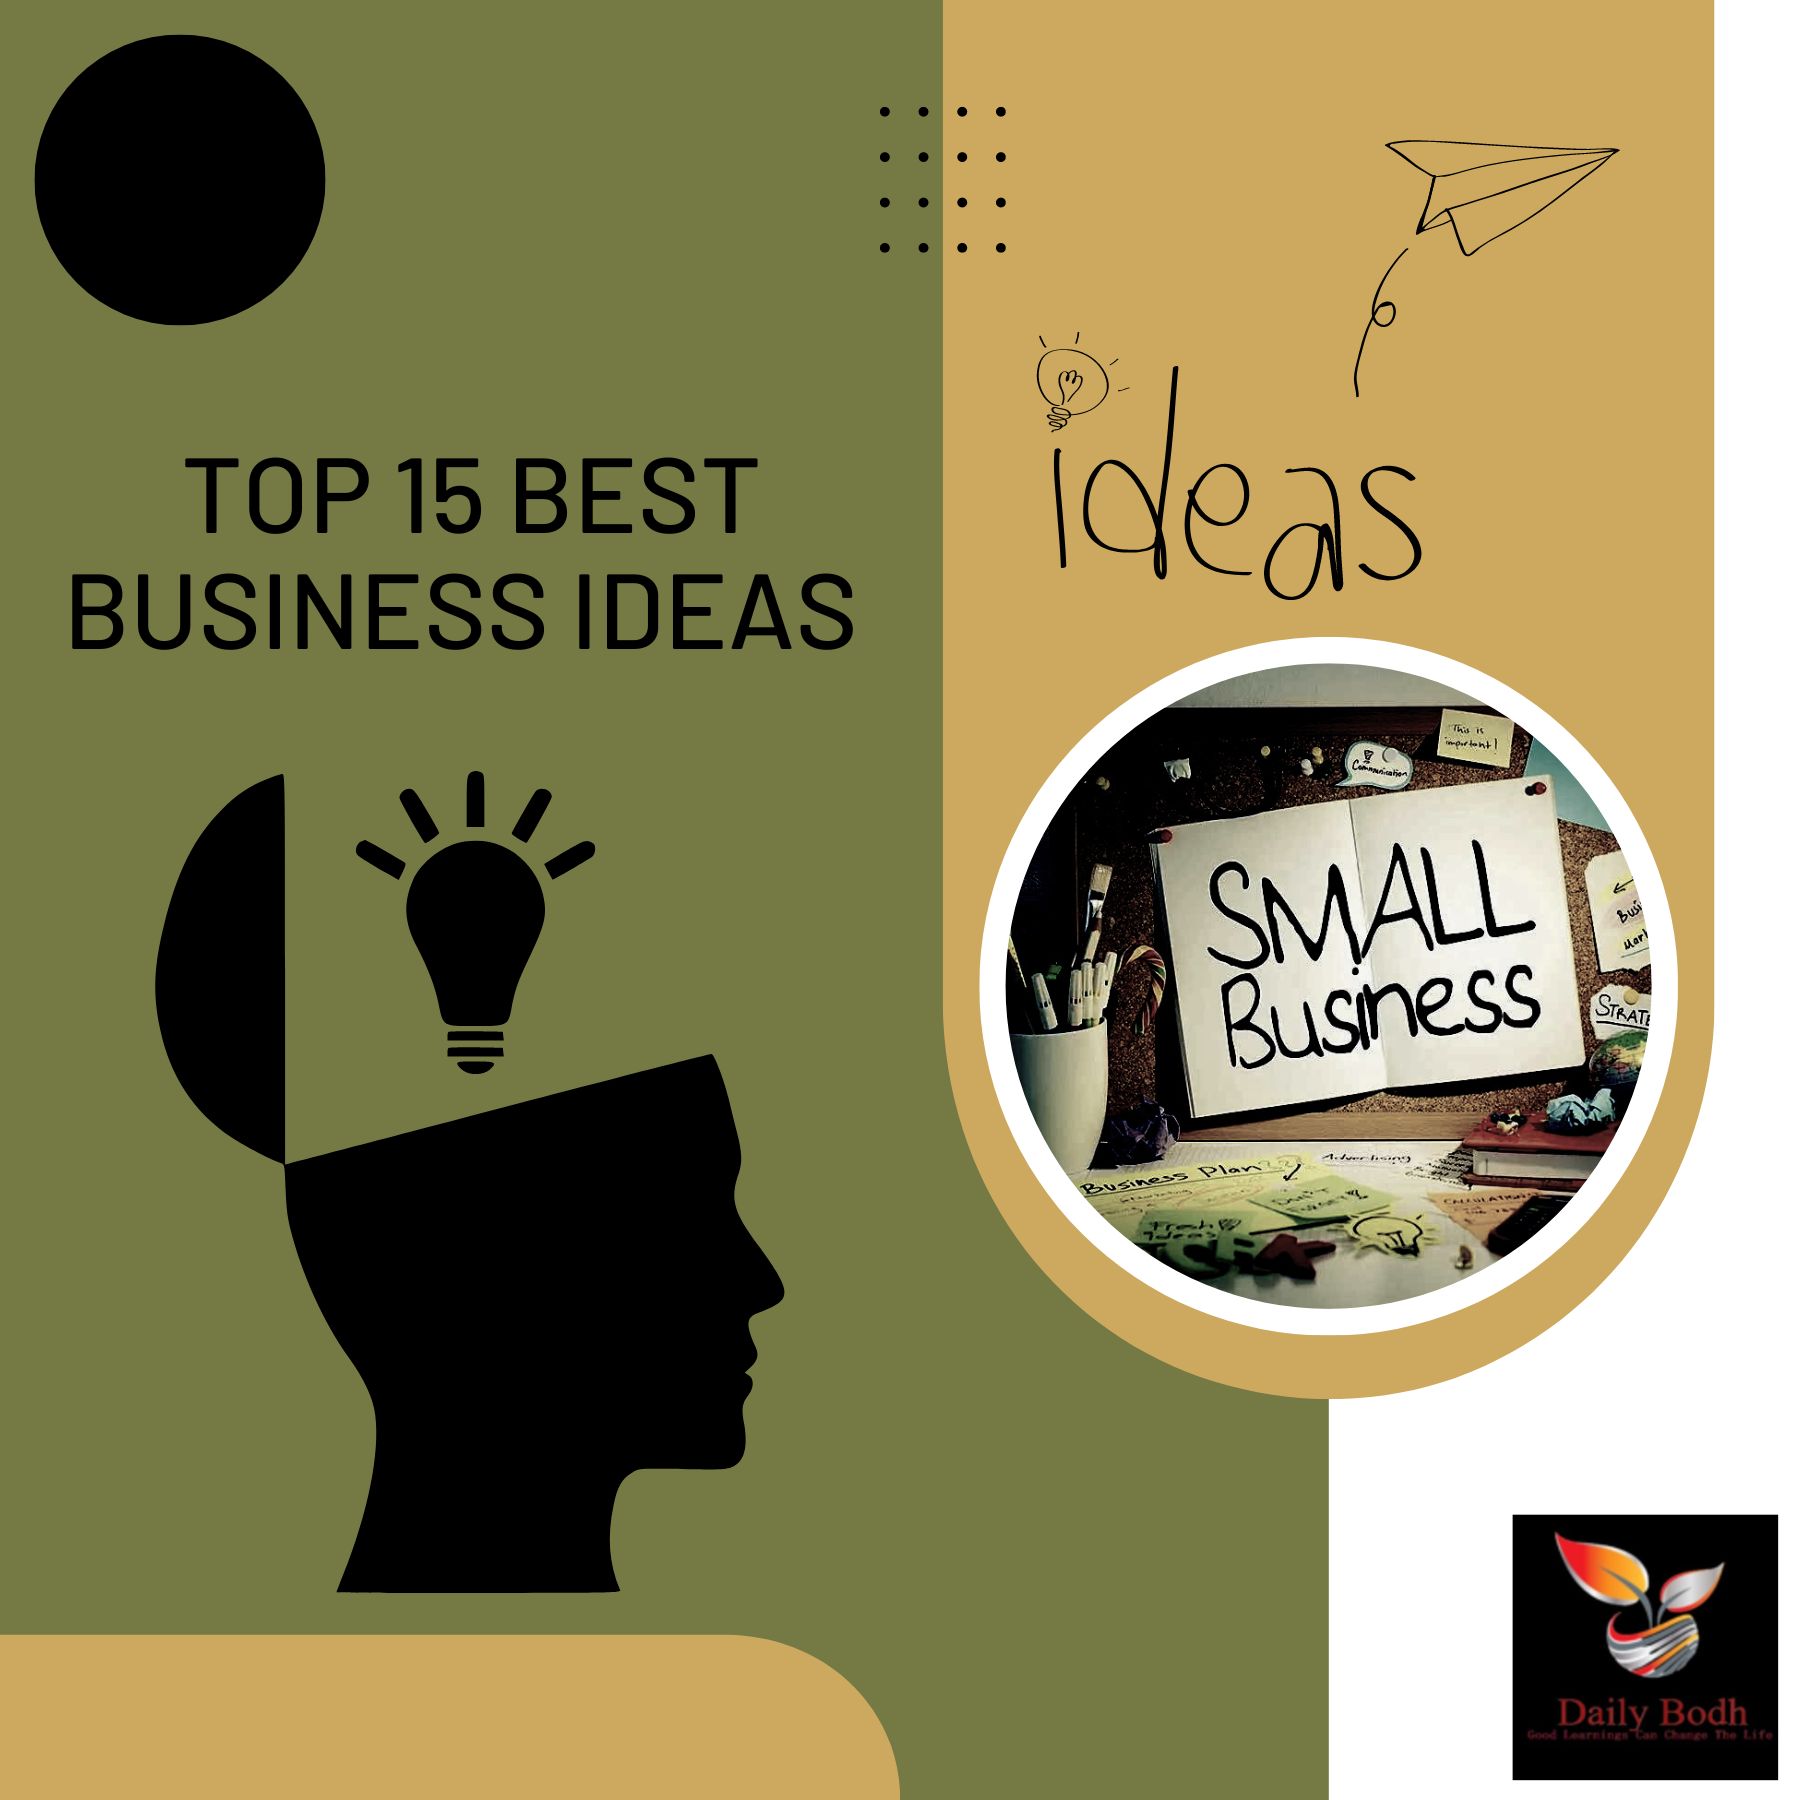 Best Business Ideas 